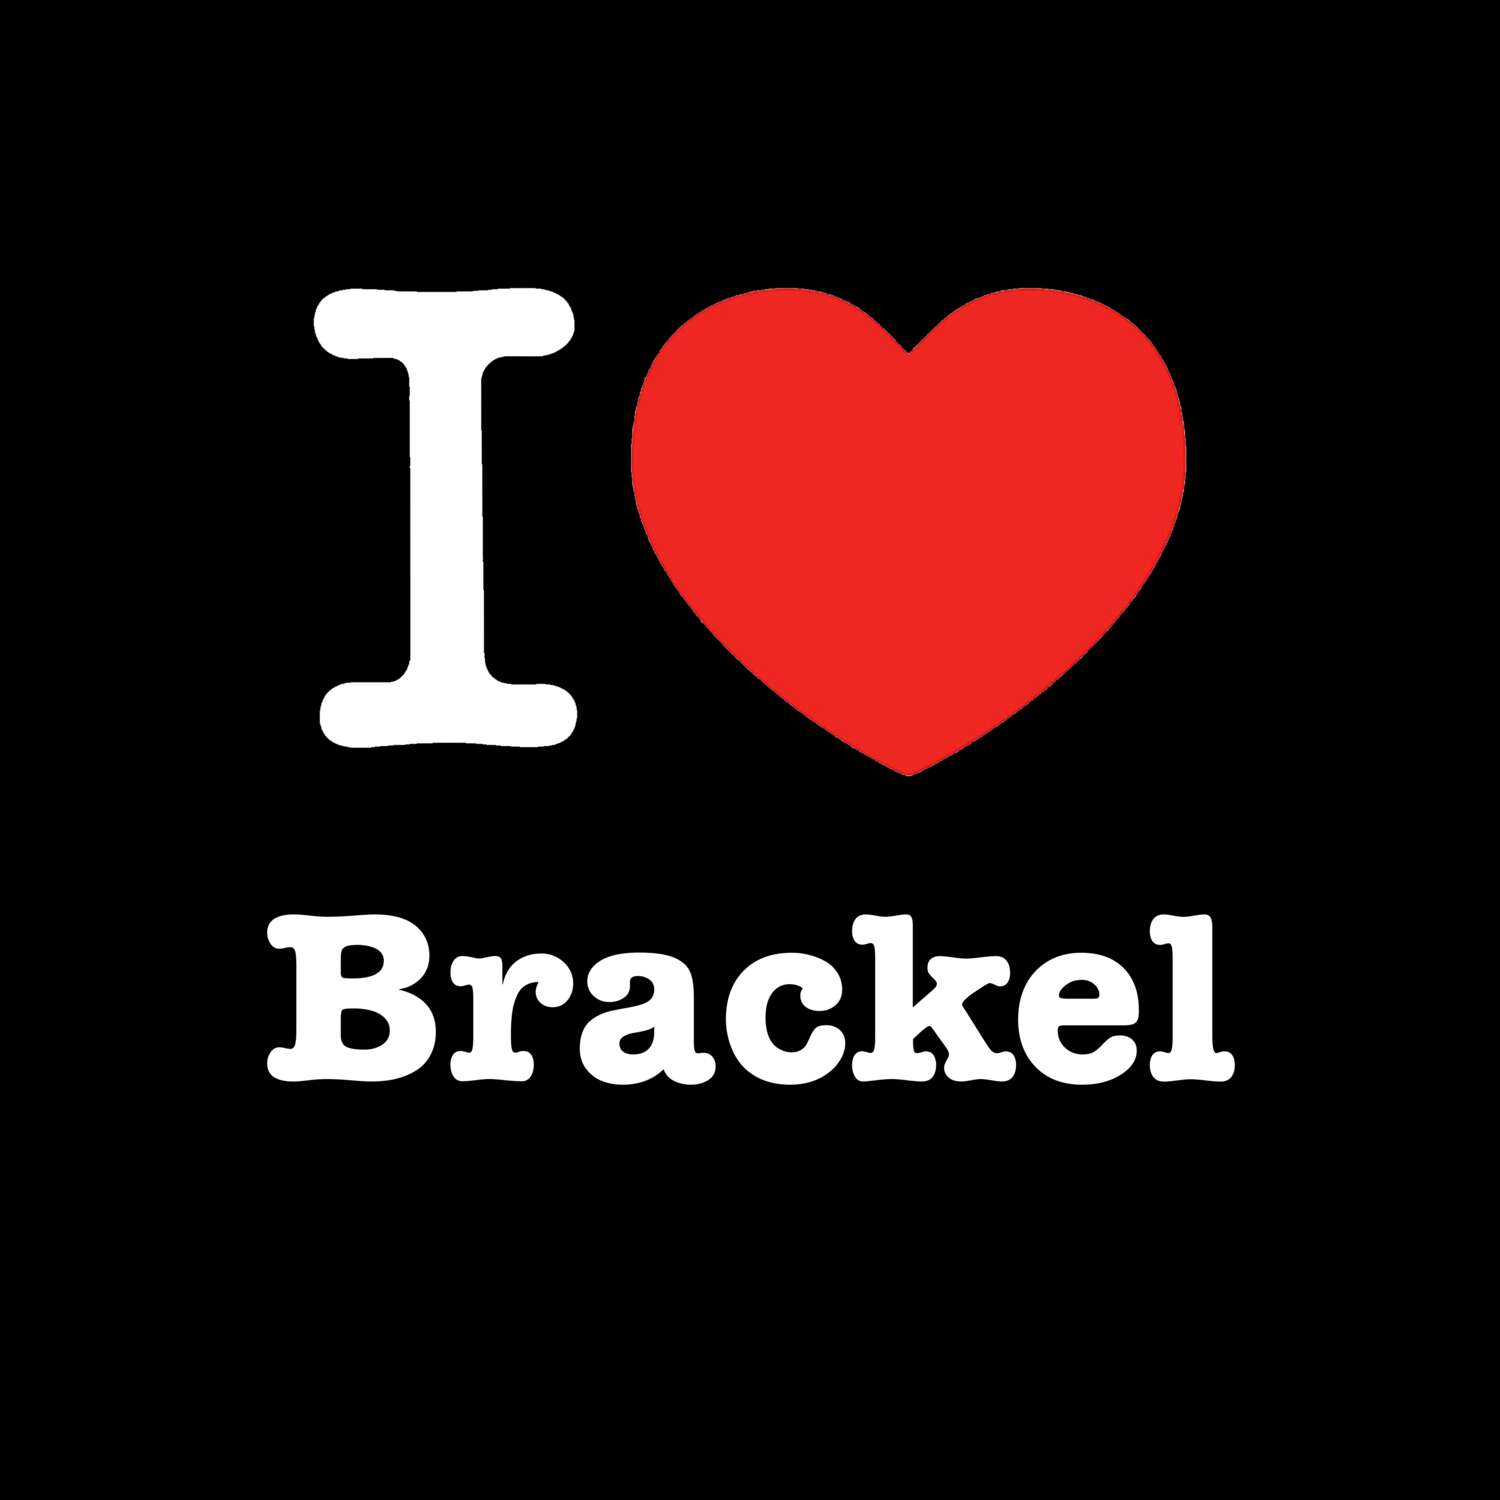 Brackel T-Shirt »I love«